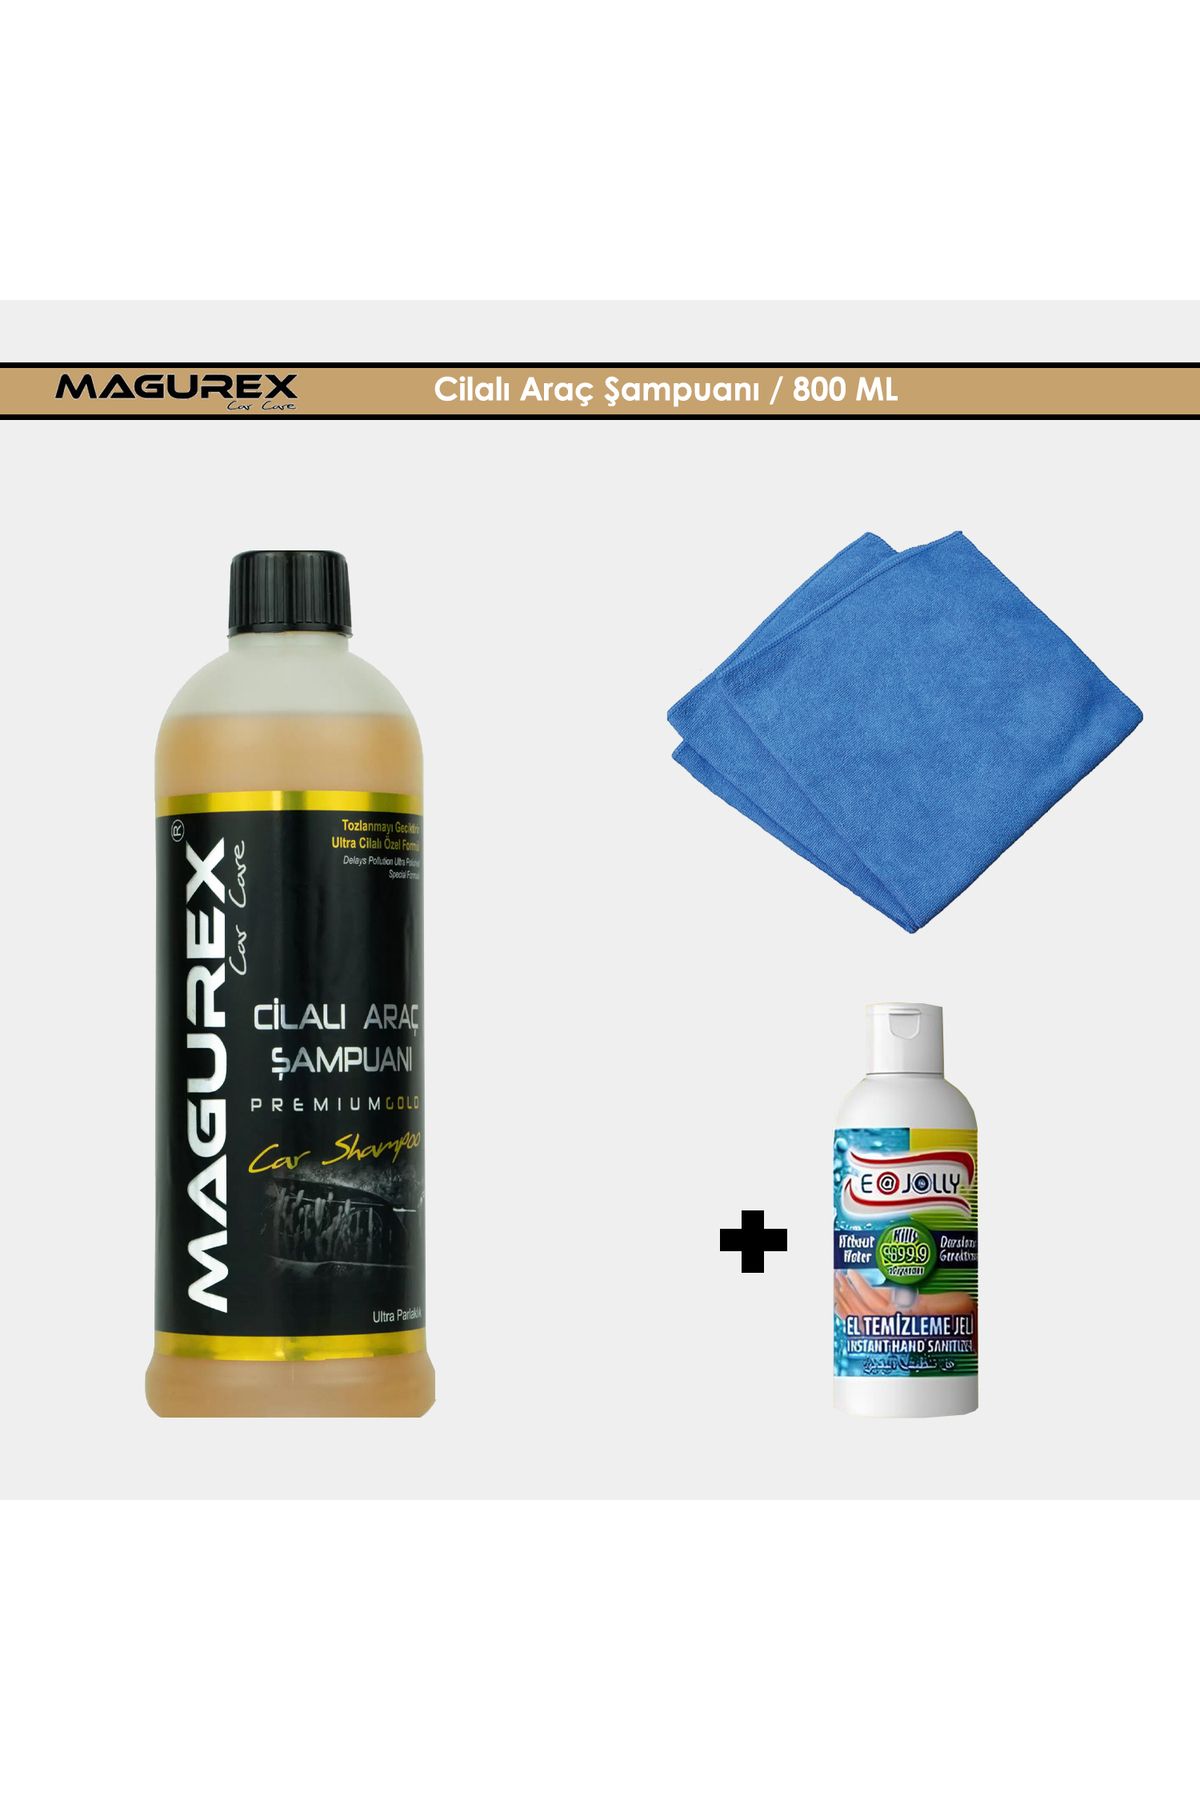 magurex Cilalı Oto Şampuanı 800Ml Premium Gold + Hediyeli